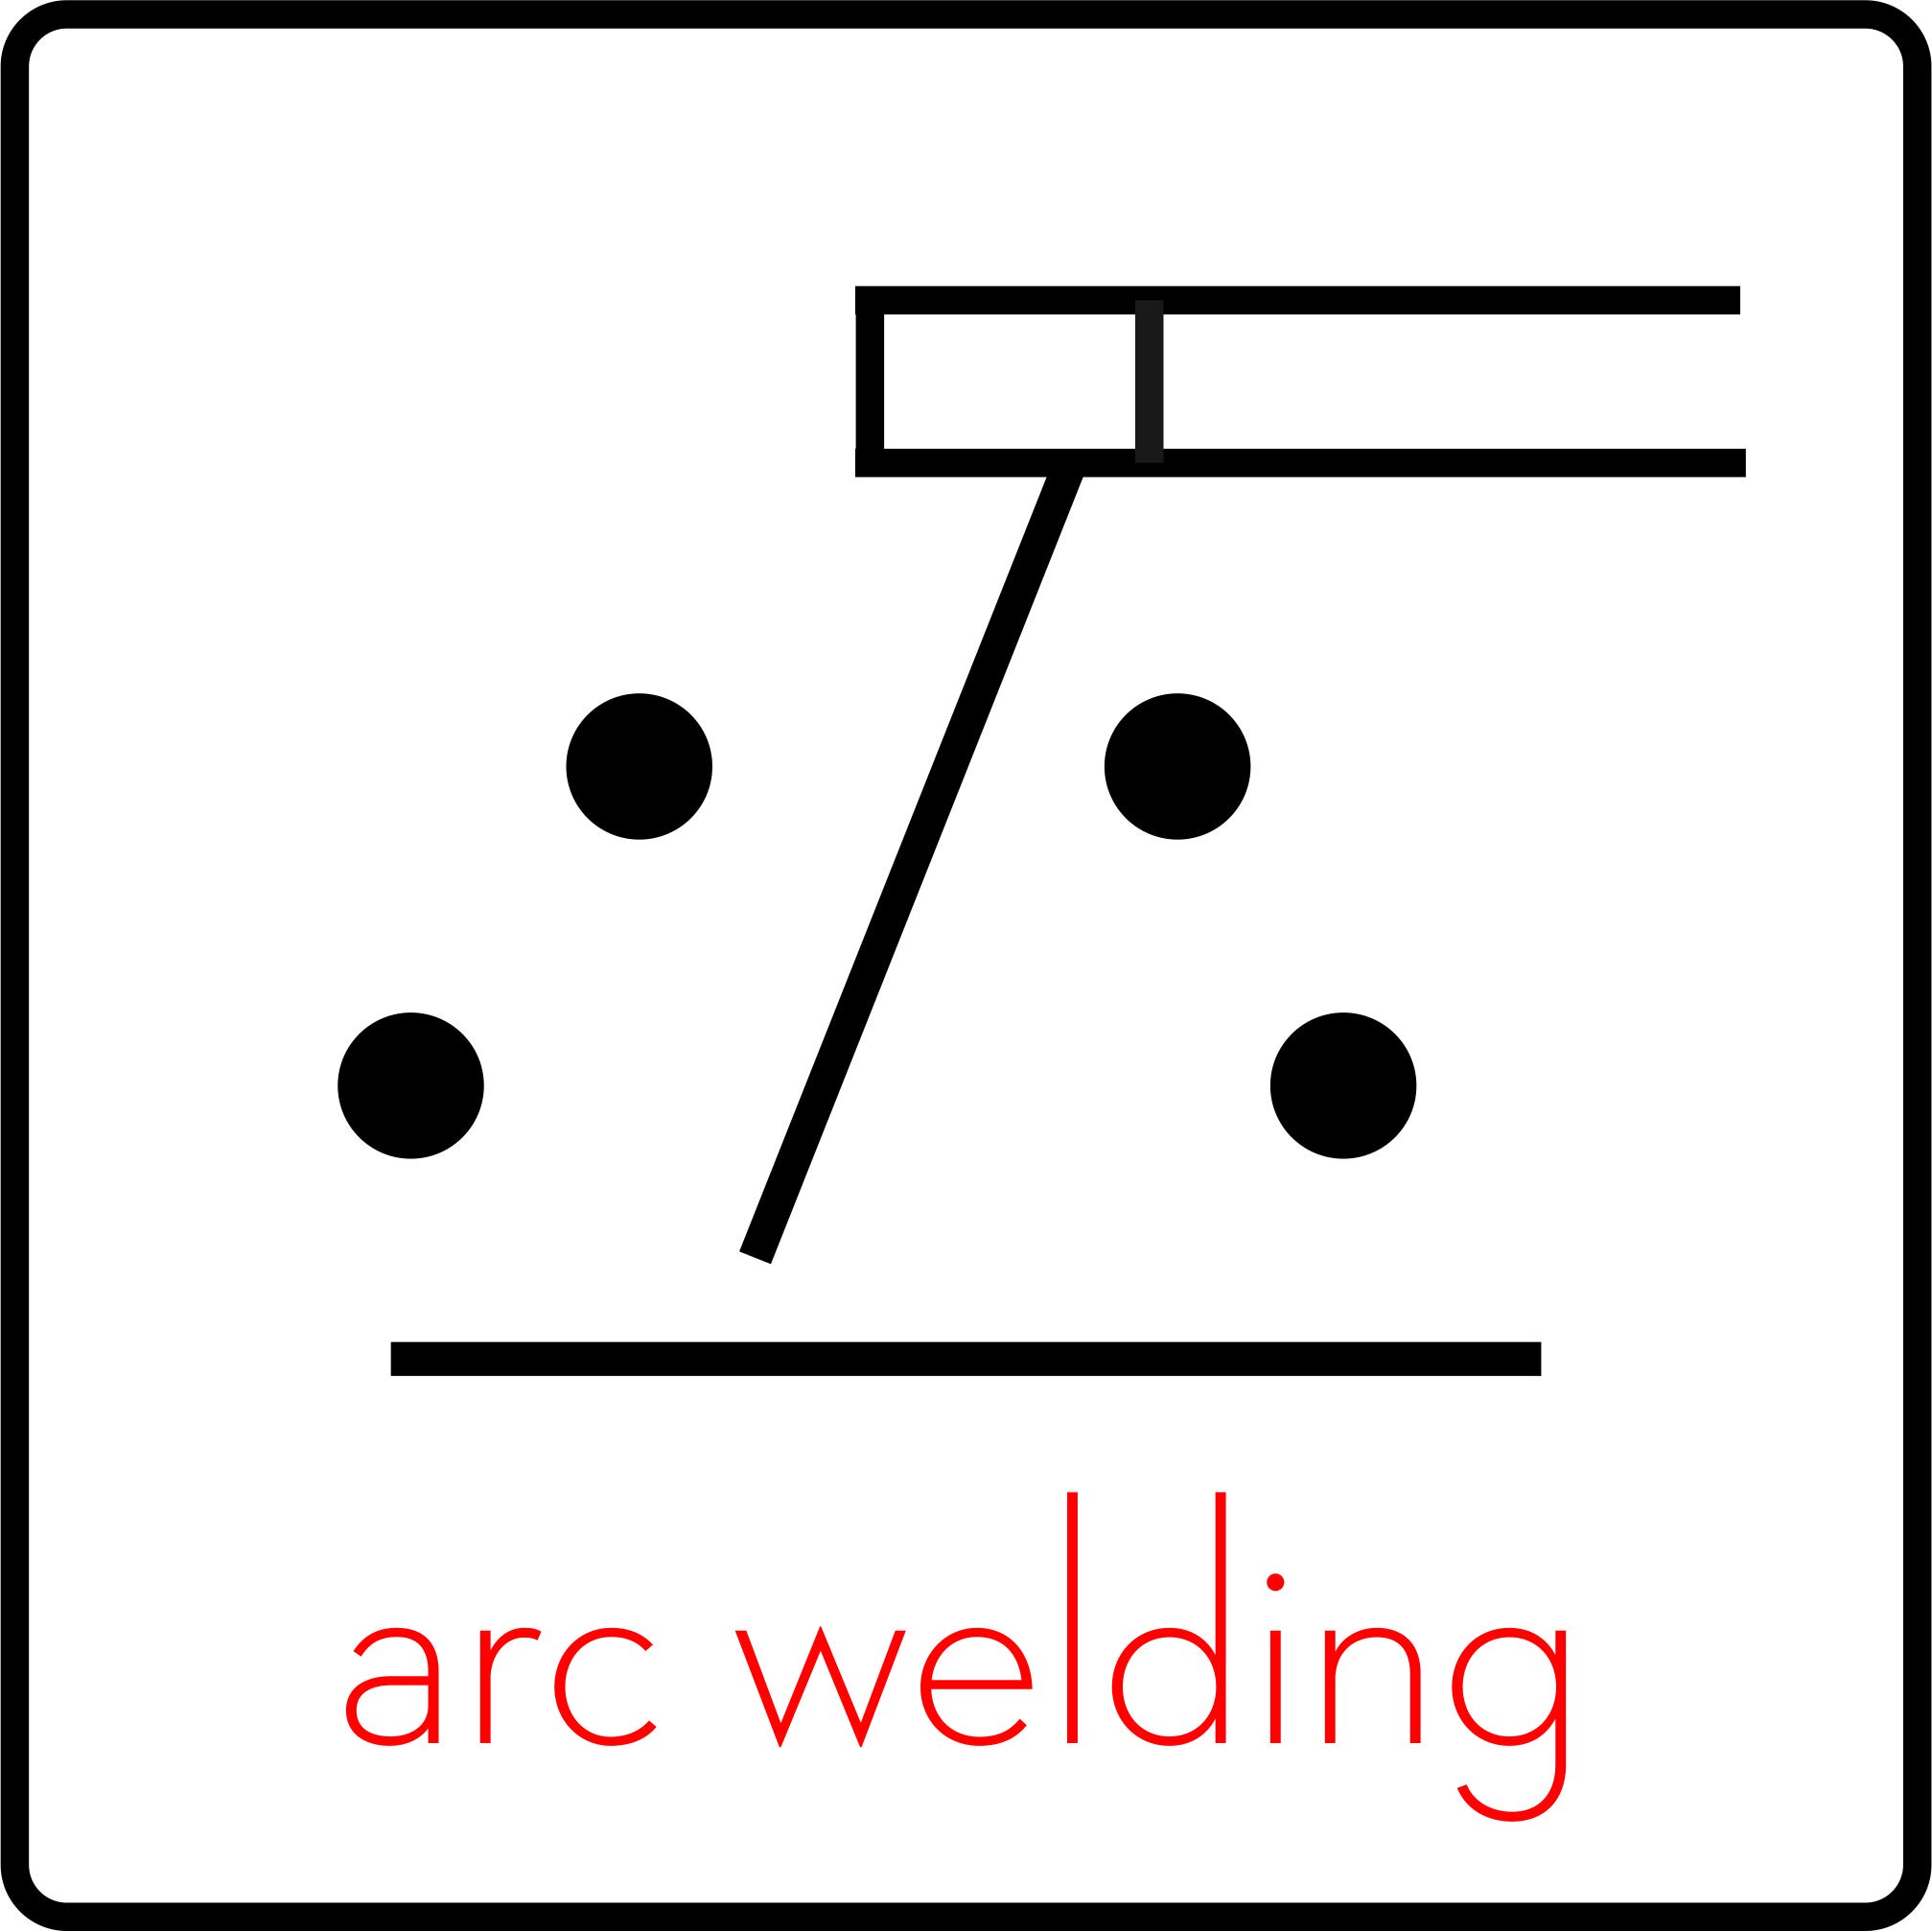 ARC WELDING.jpg